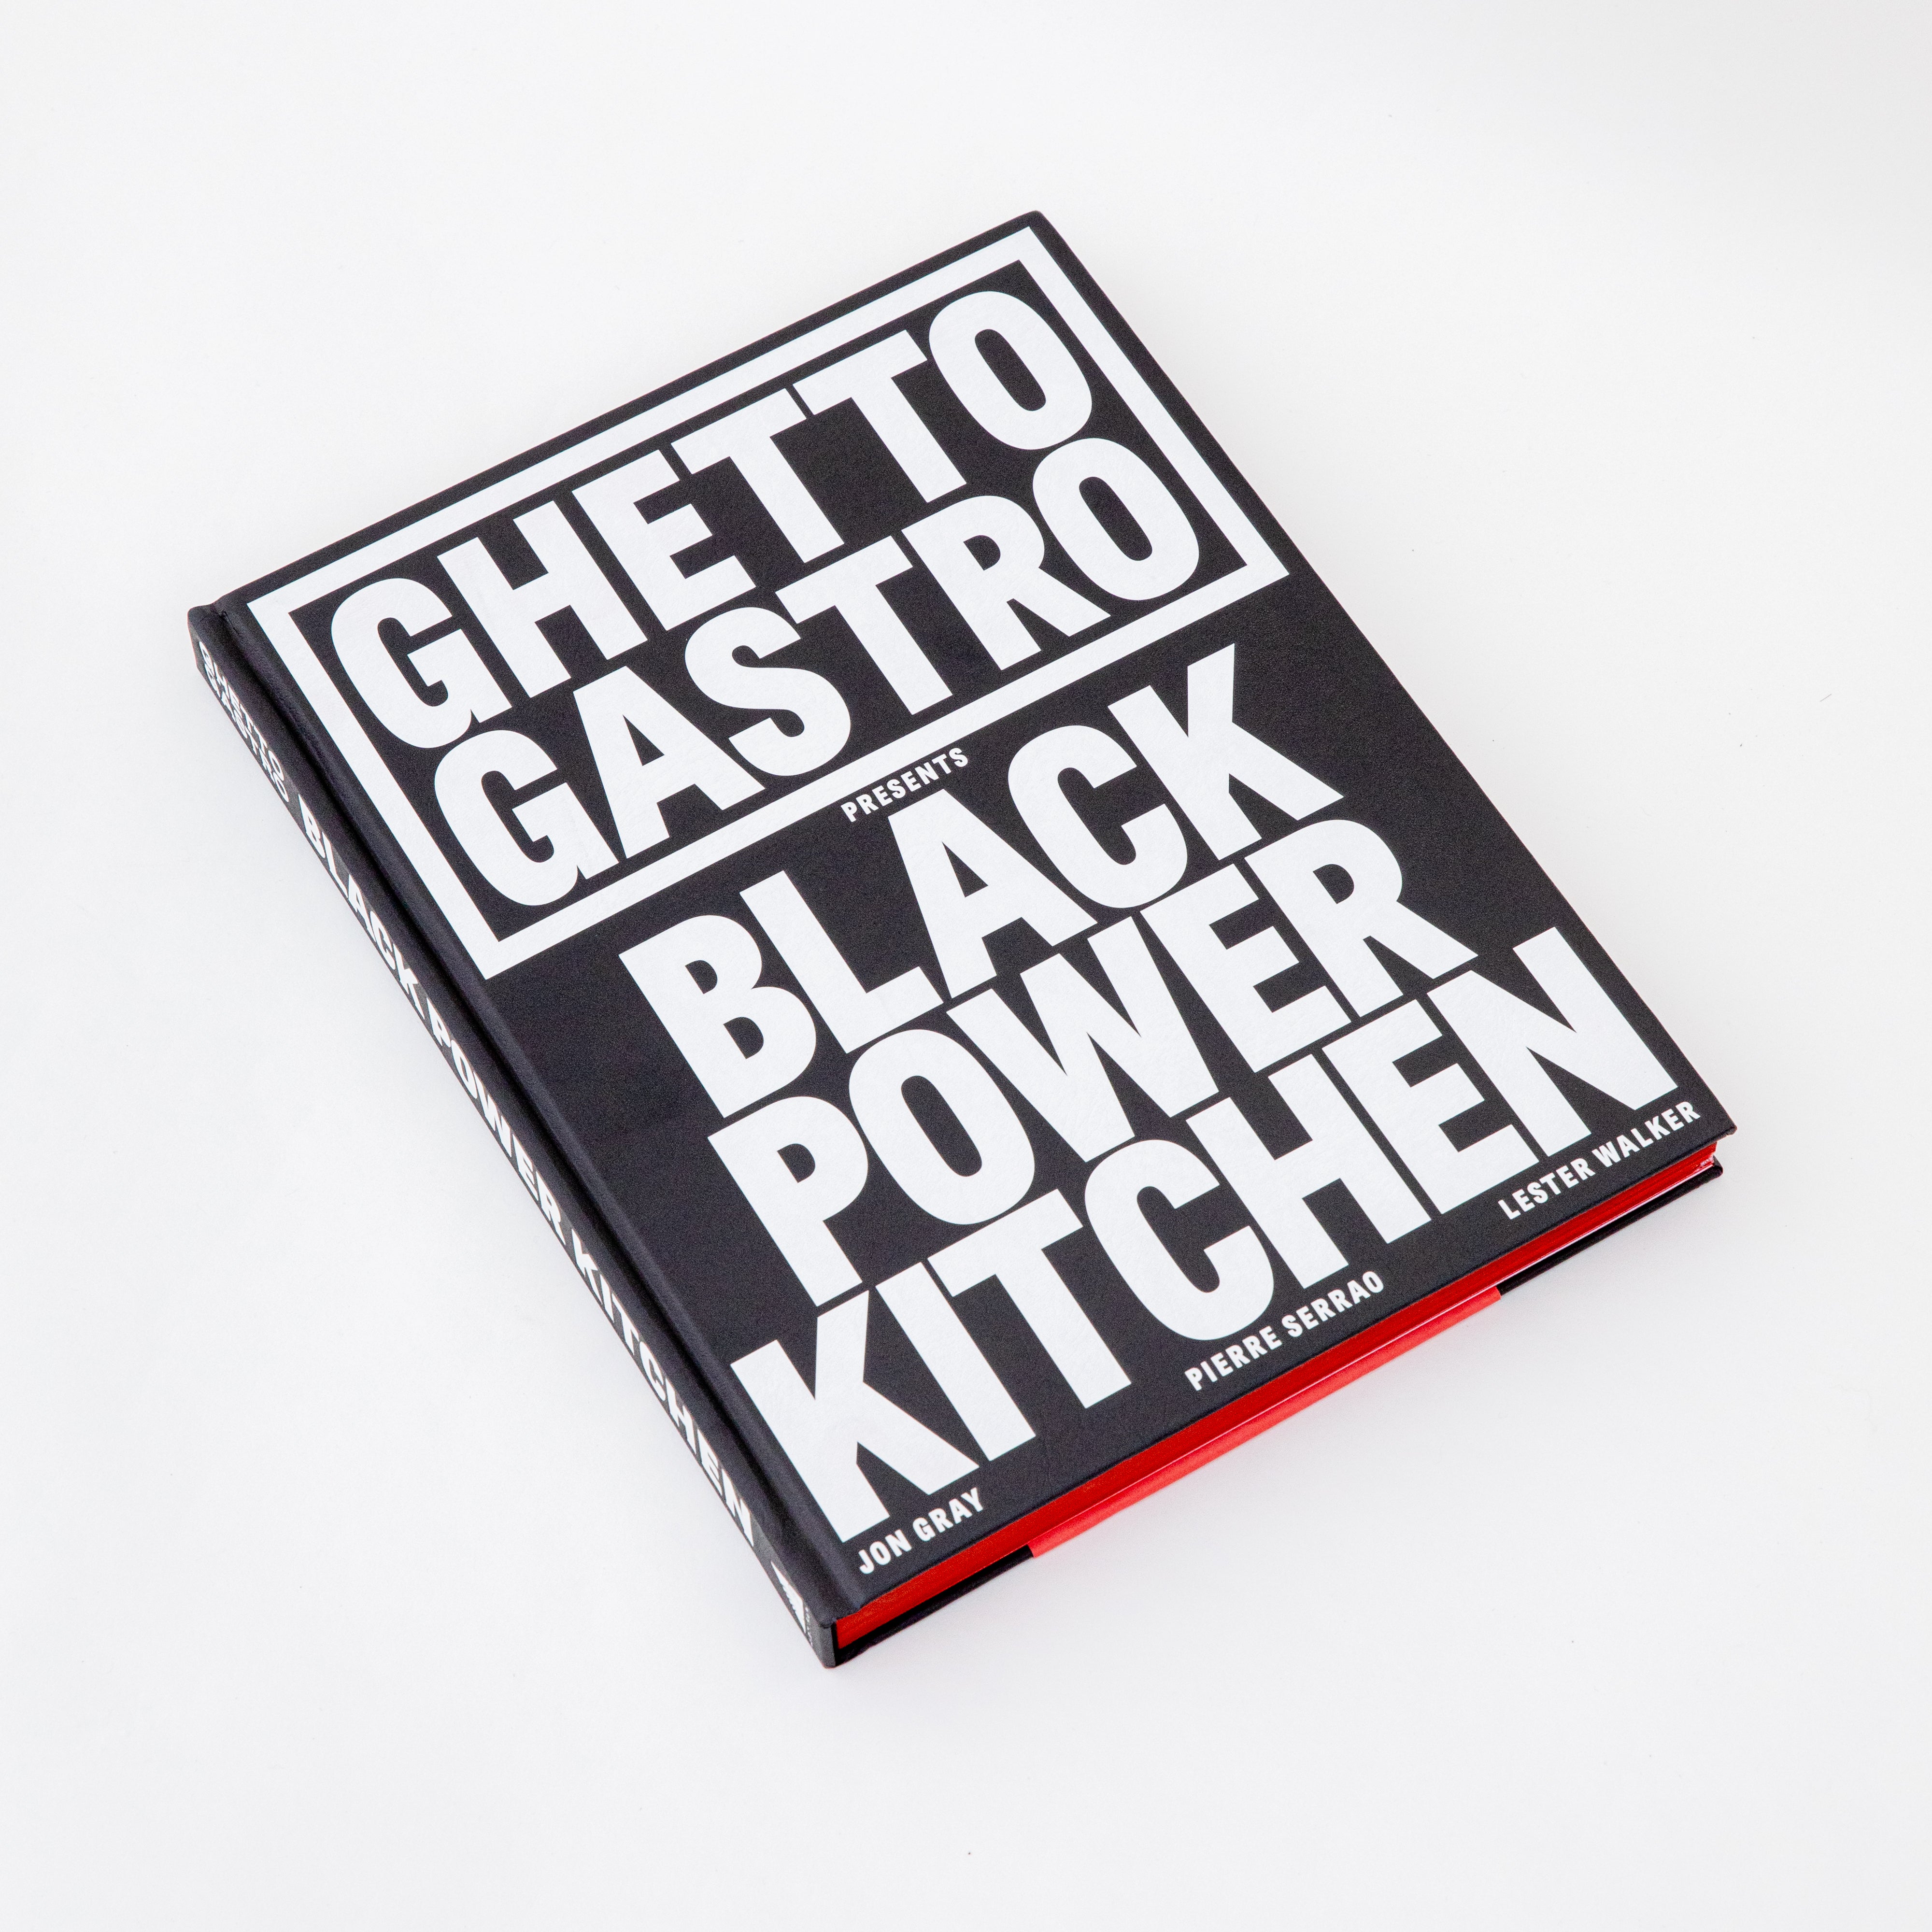 Cover of Ghetto Gastro presents: Black Power Kitchen.